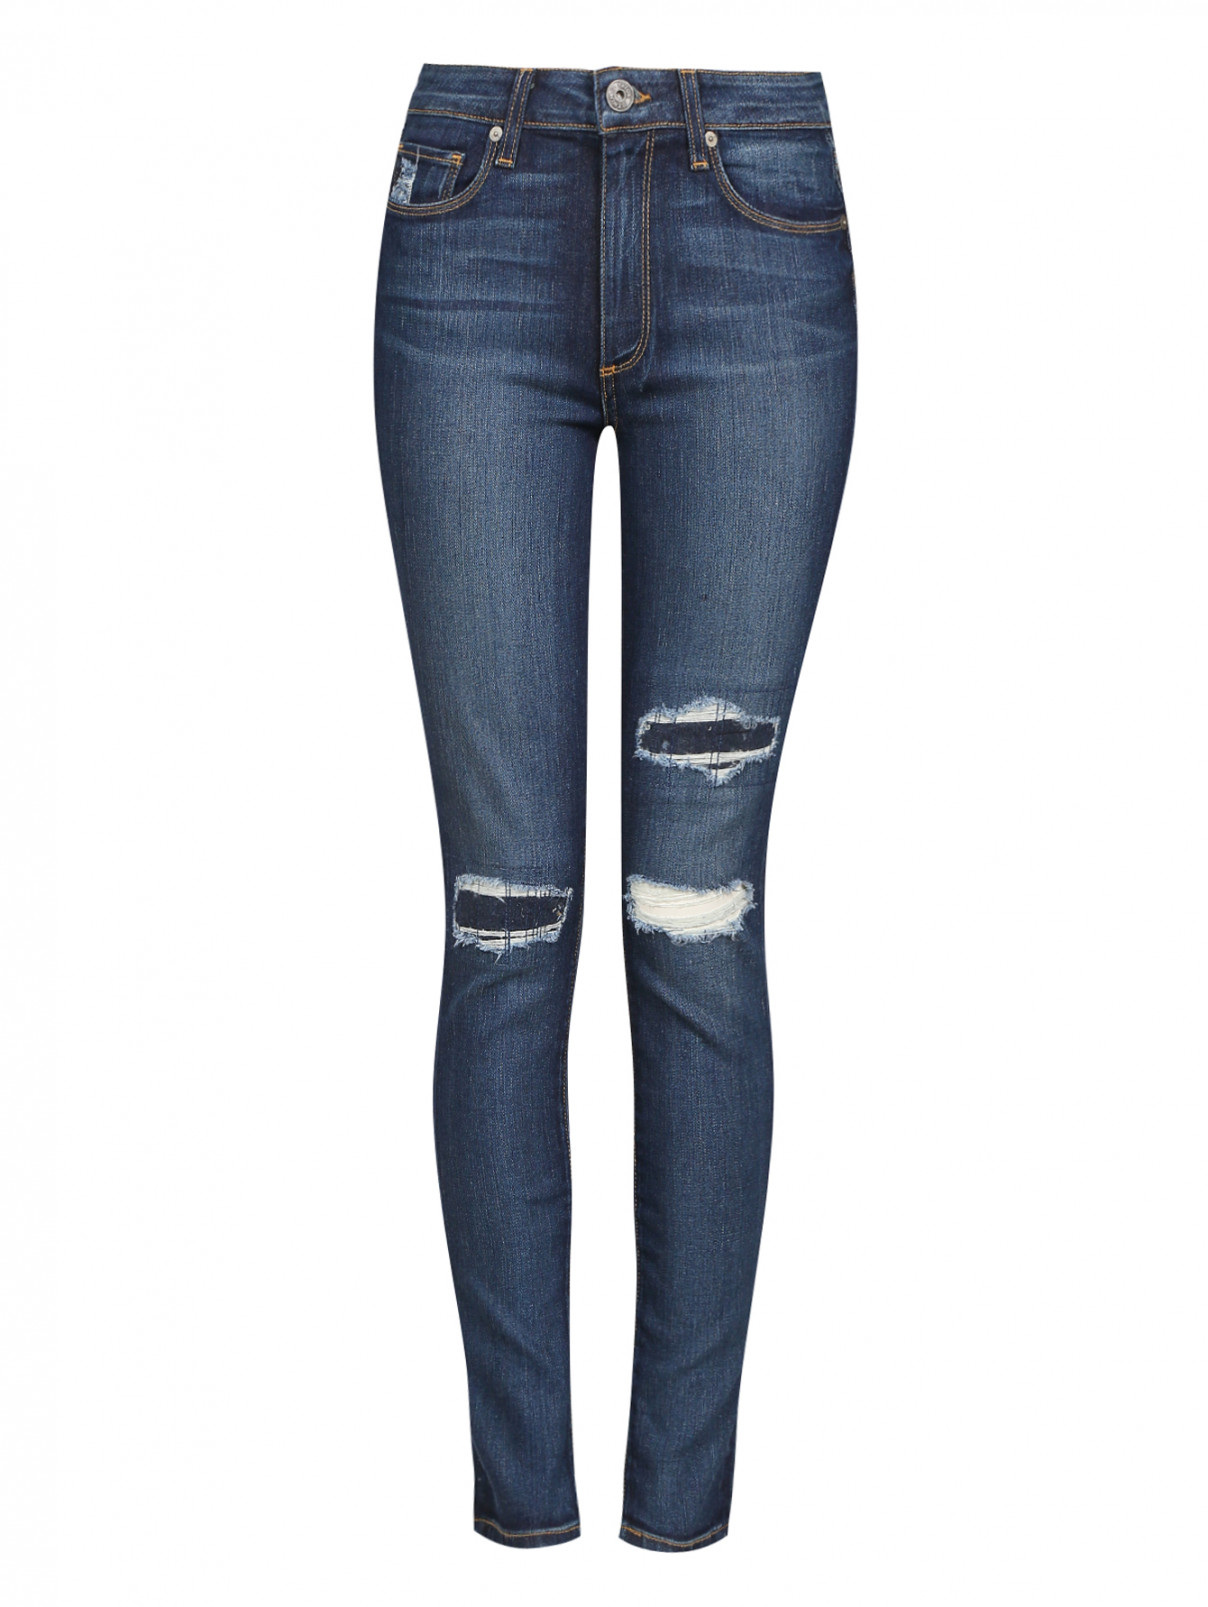 Узкие джинсы с потертостями Paige  –  Общий вид  – Цвет:  Синий